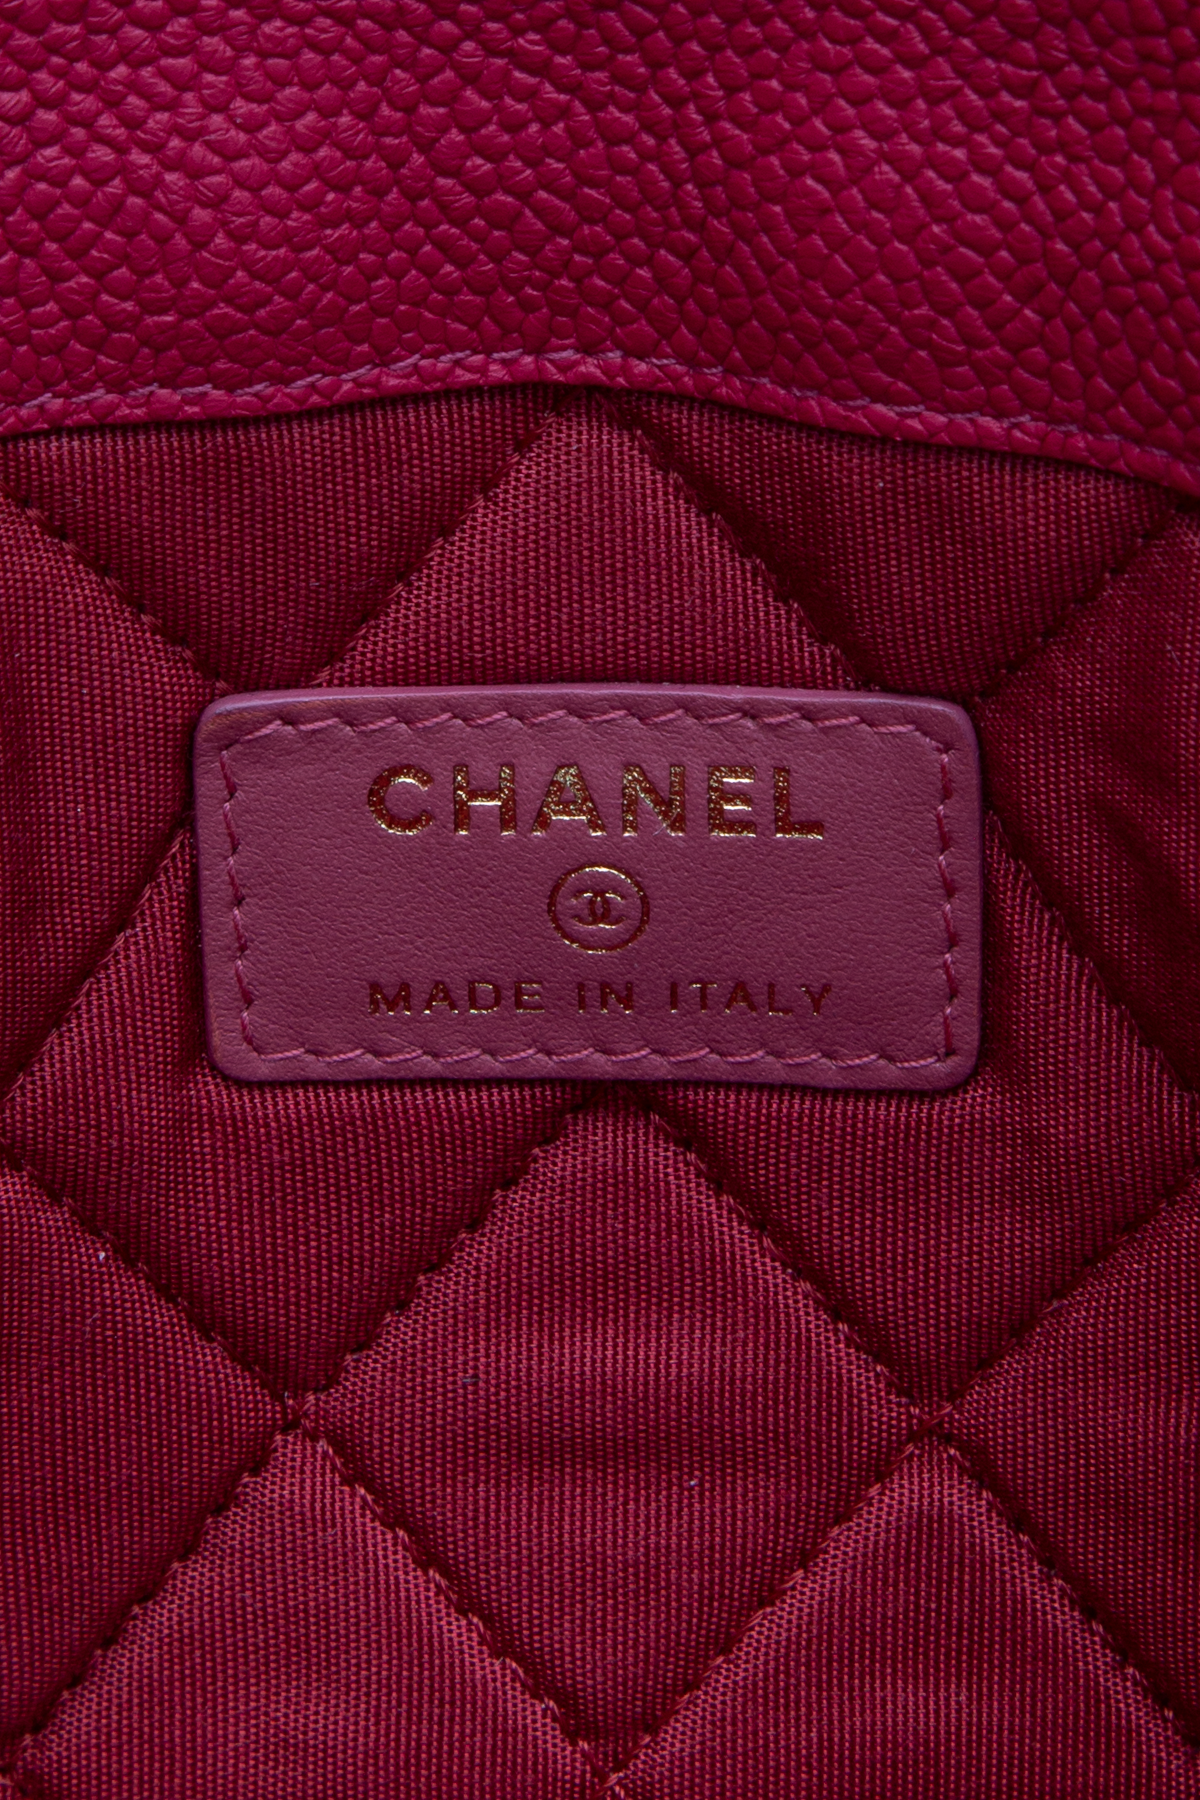 Gucci tote or Louis Vuitton Neverfull #guccibag #designerresale